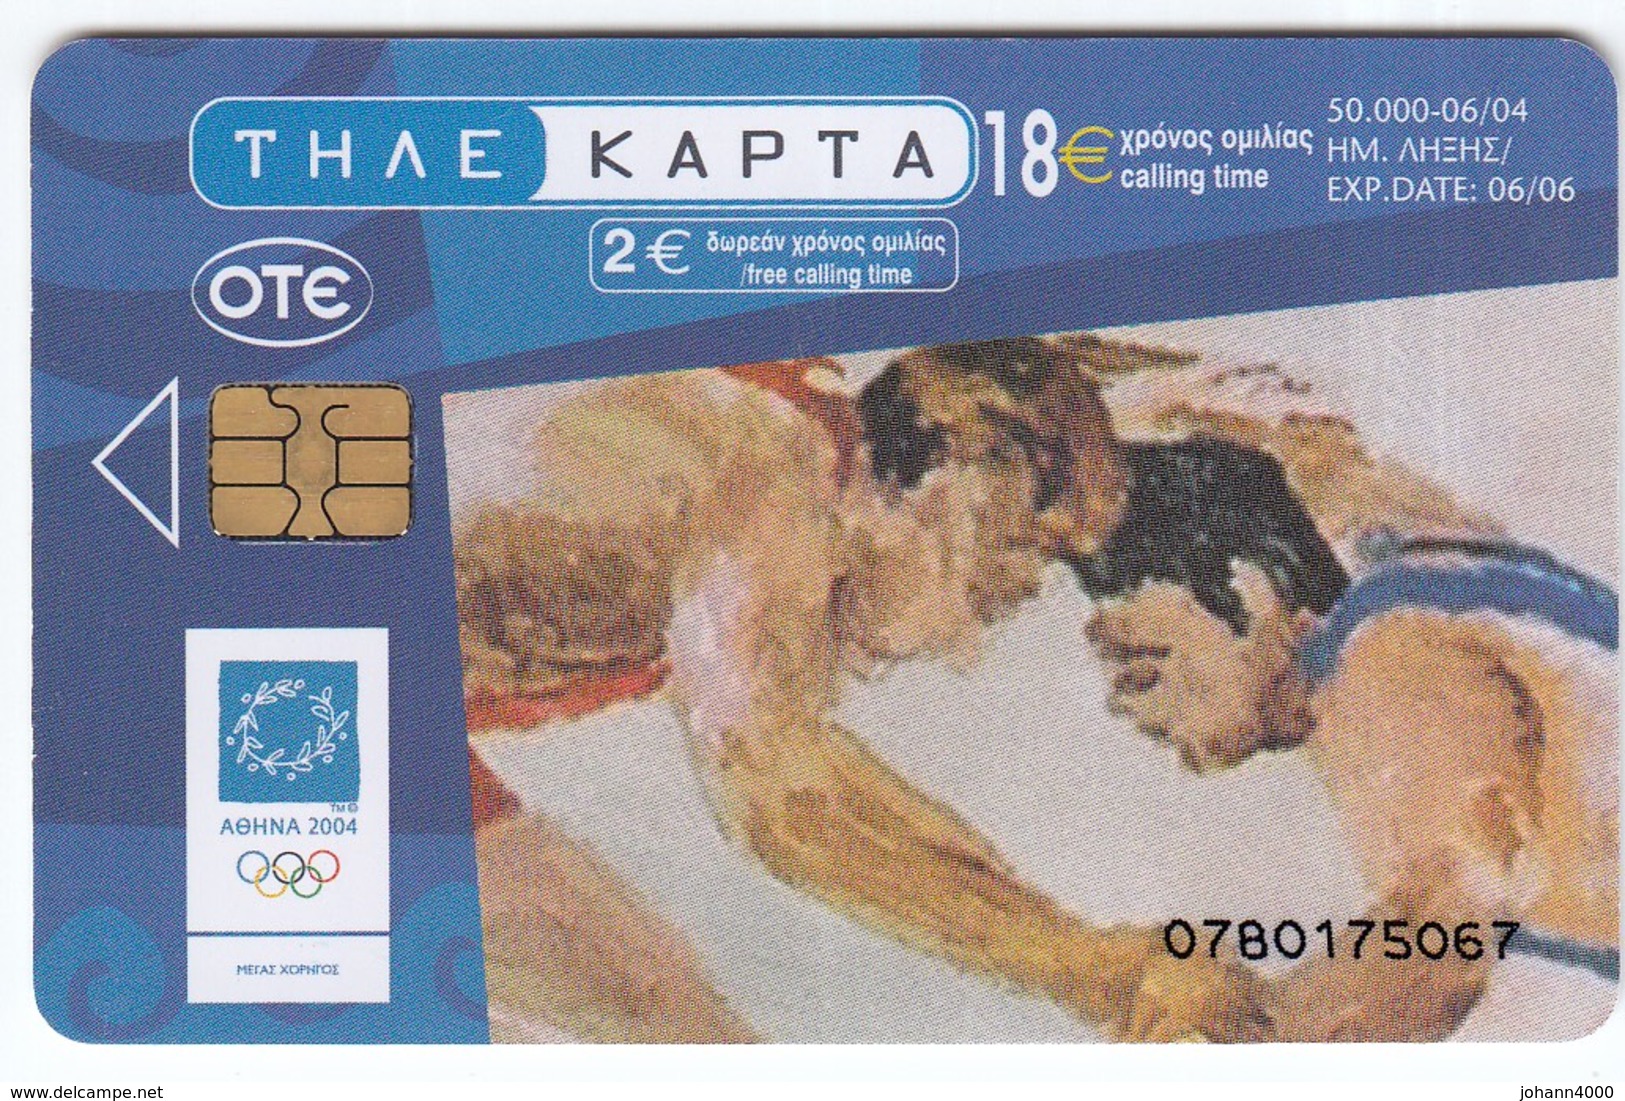 Telefonkarte Griechenland  Chip OTE   Nr. 1959    0780   Aufl. 50.000 St. - Griechenland